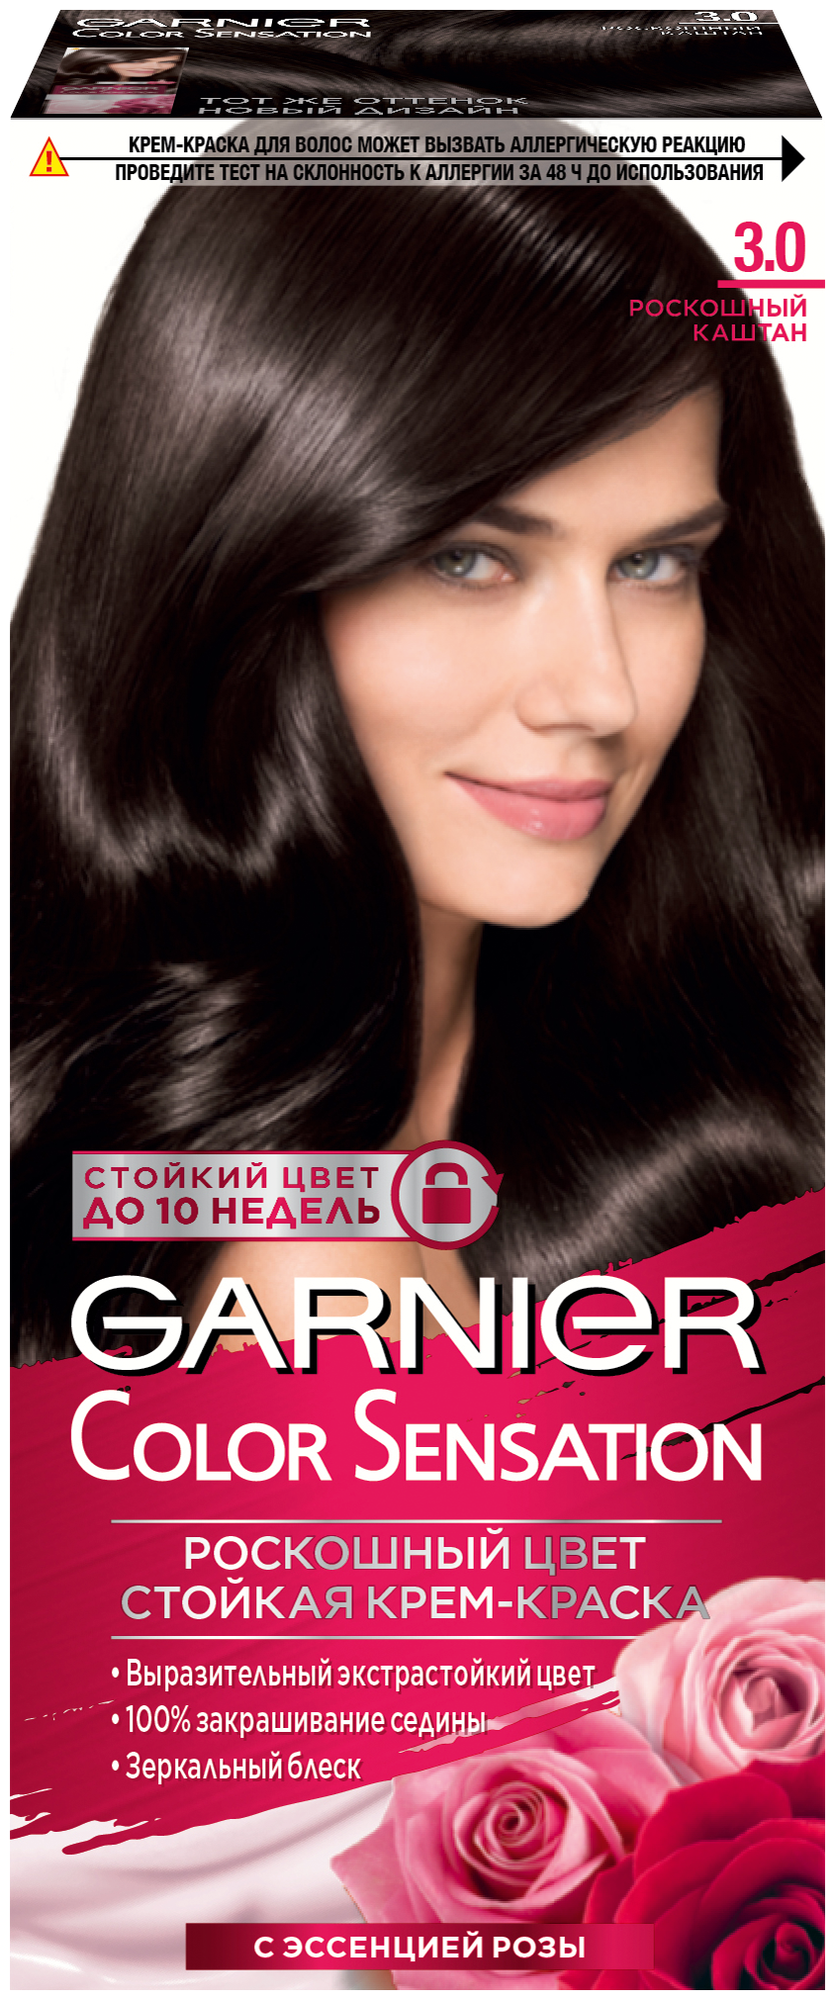 GARNIER Color Sensation стойкая крем-краска для волос, 3.0, Роскошный каштан